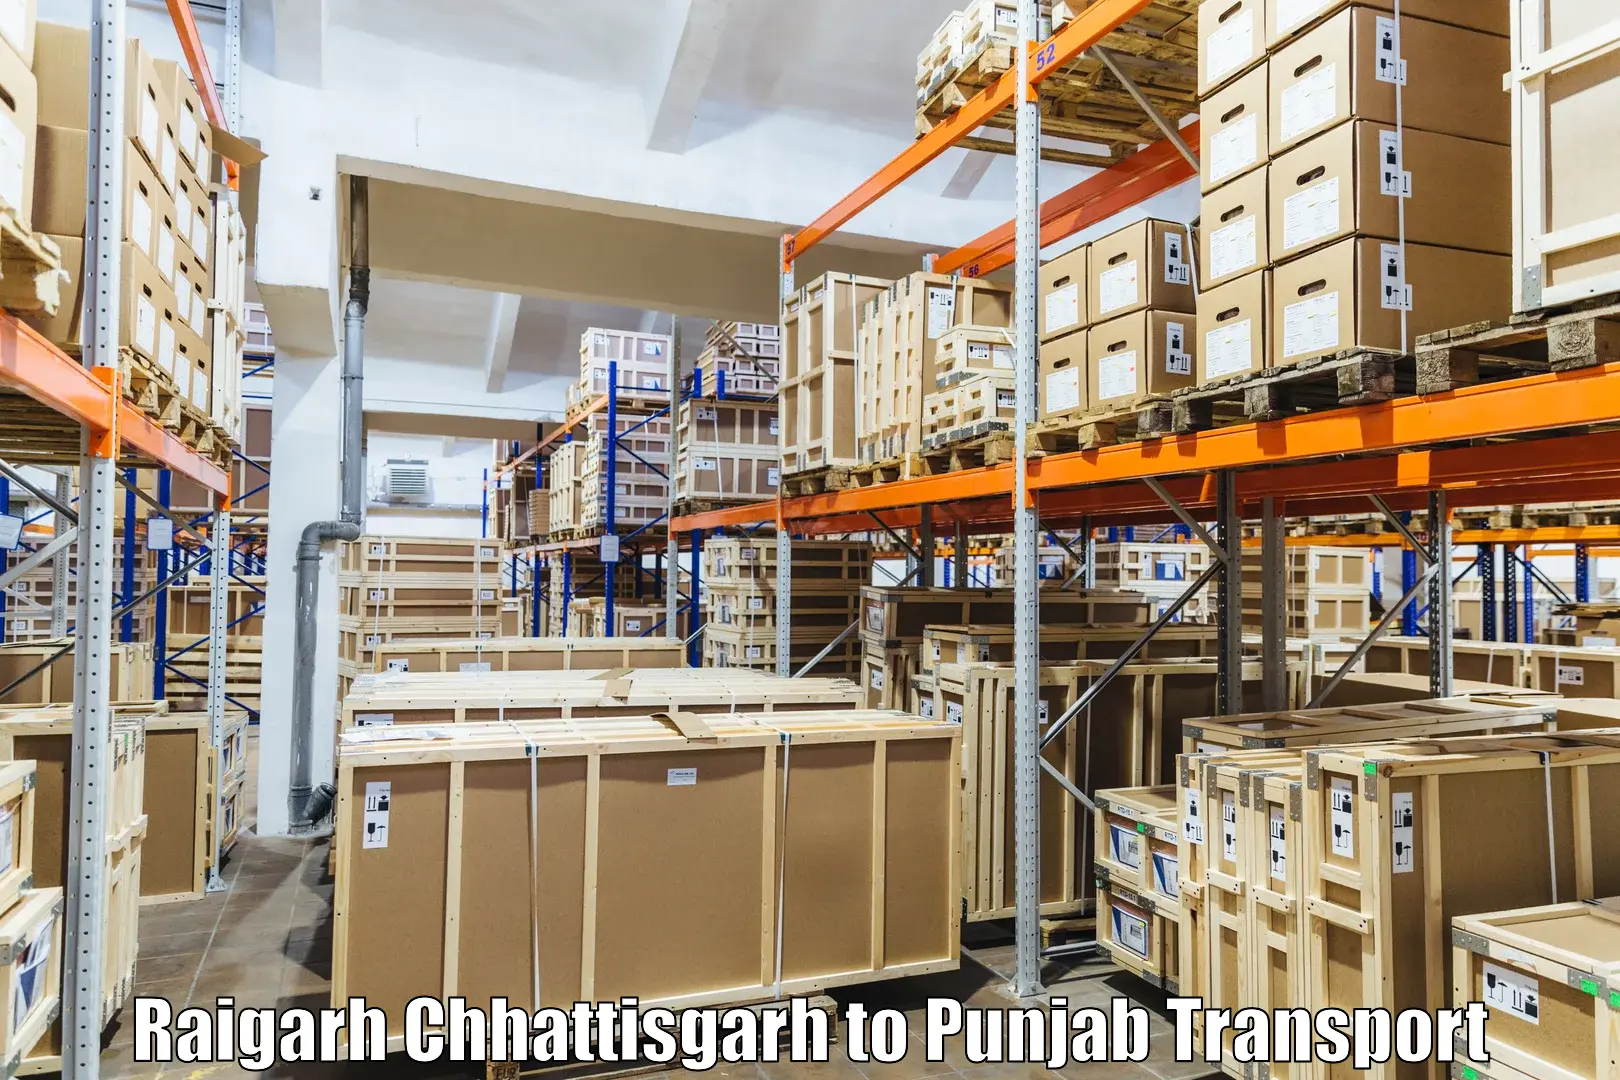 Transport in sharing in Raigarh Chhattisgarh to Tarn Taran Sahib